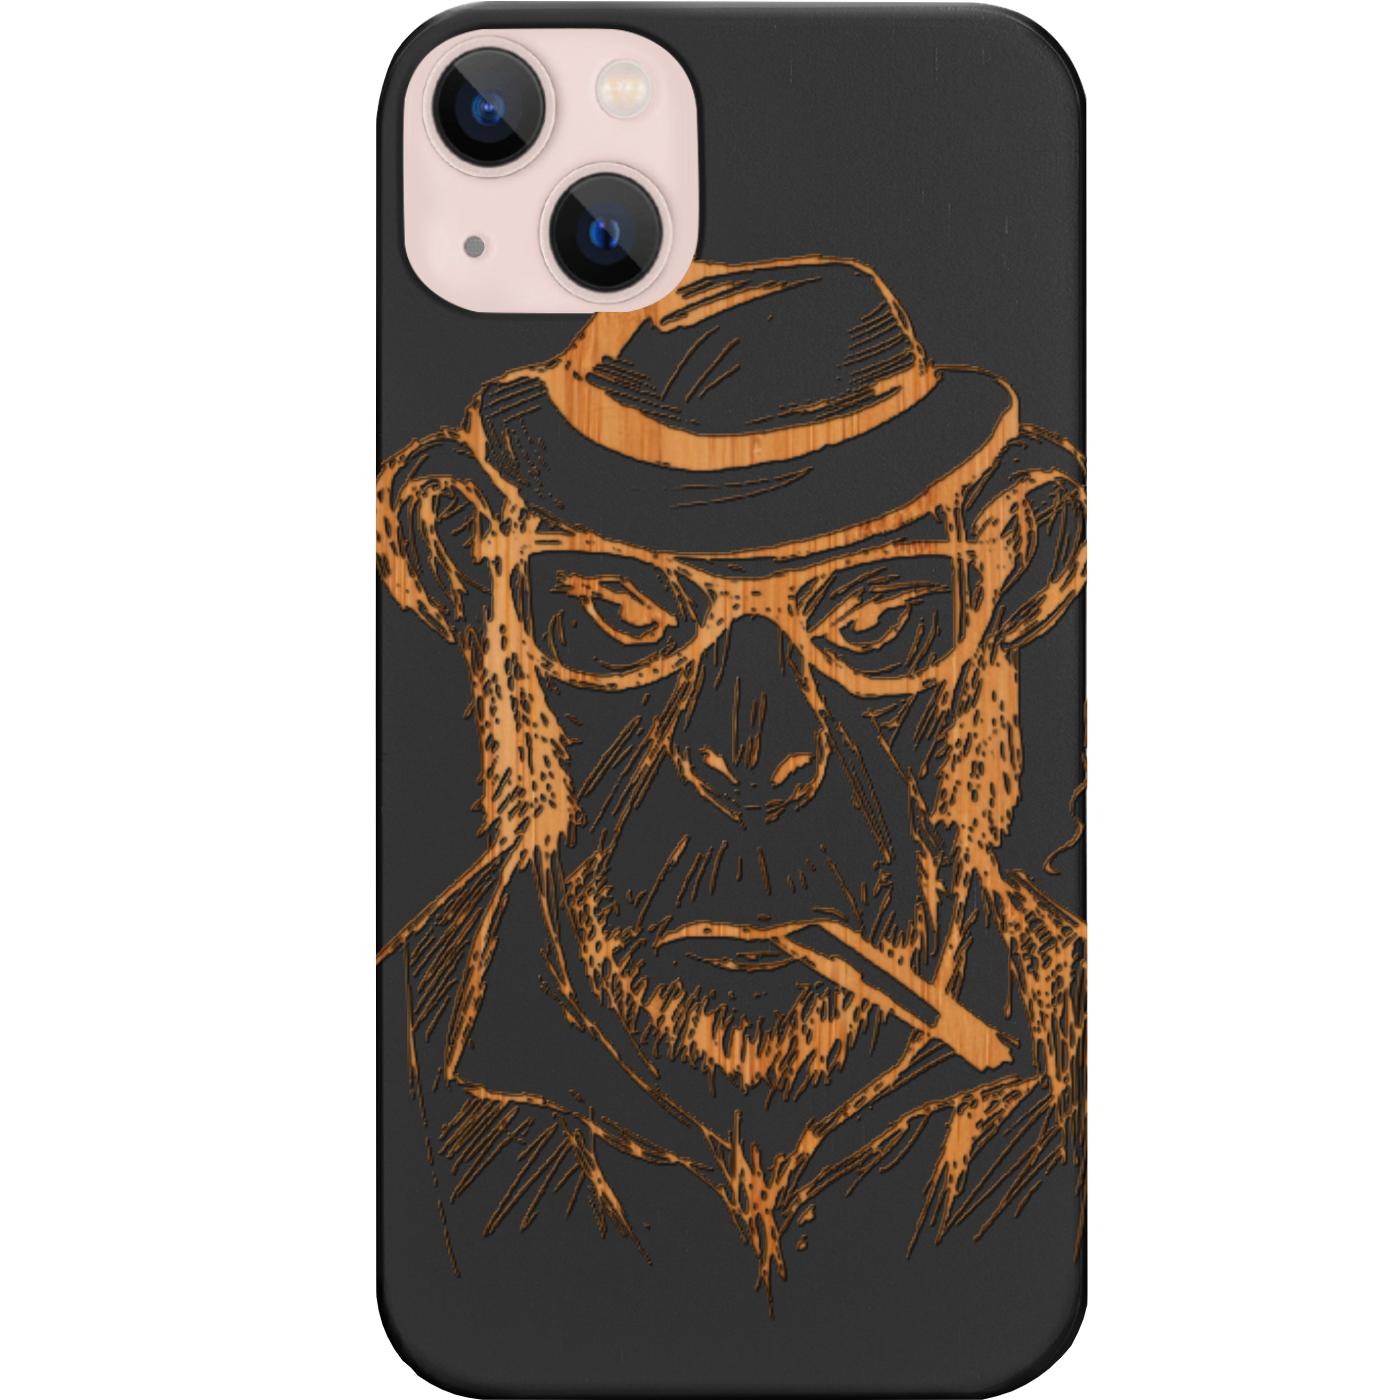 Smoking Gorilla - Engraved Phone Case